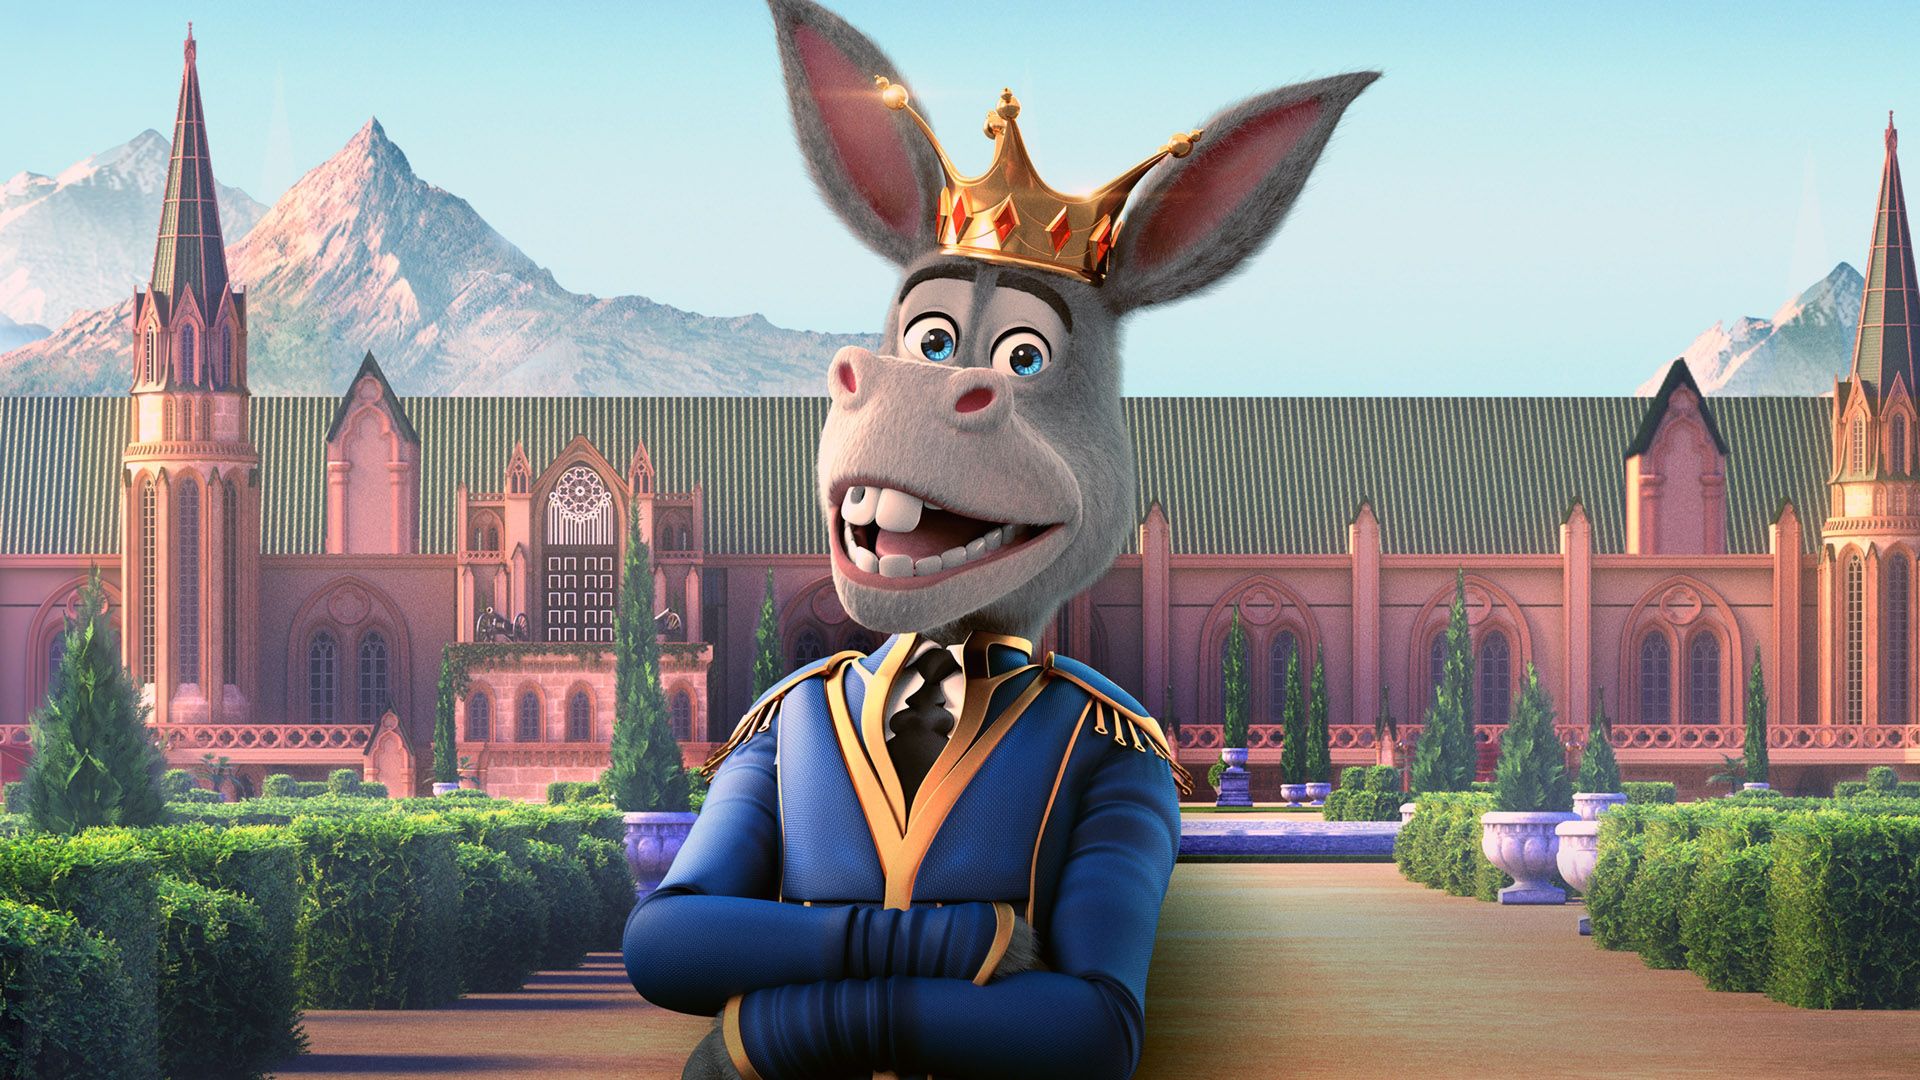 The Donkey King background